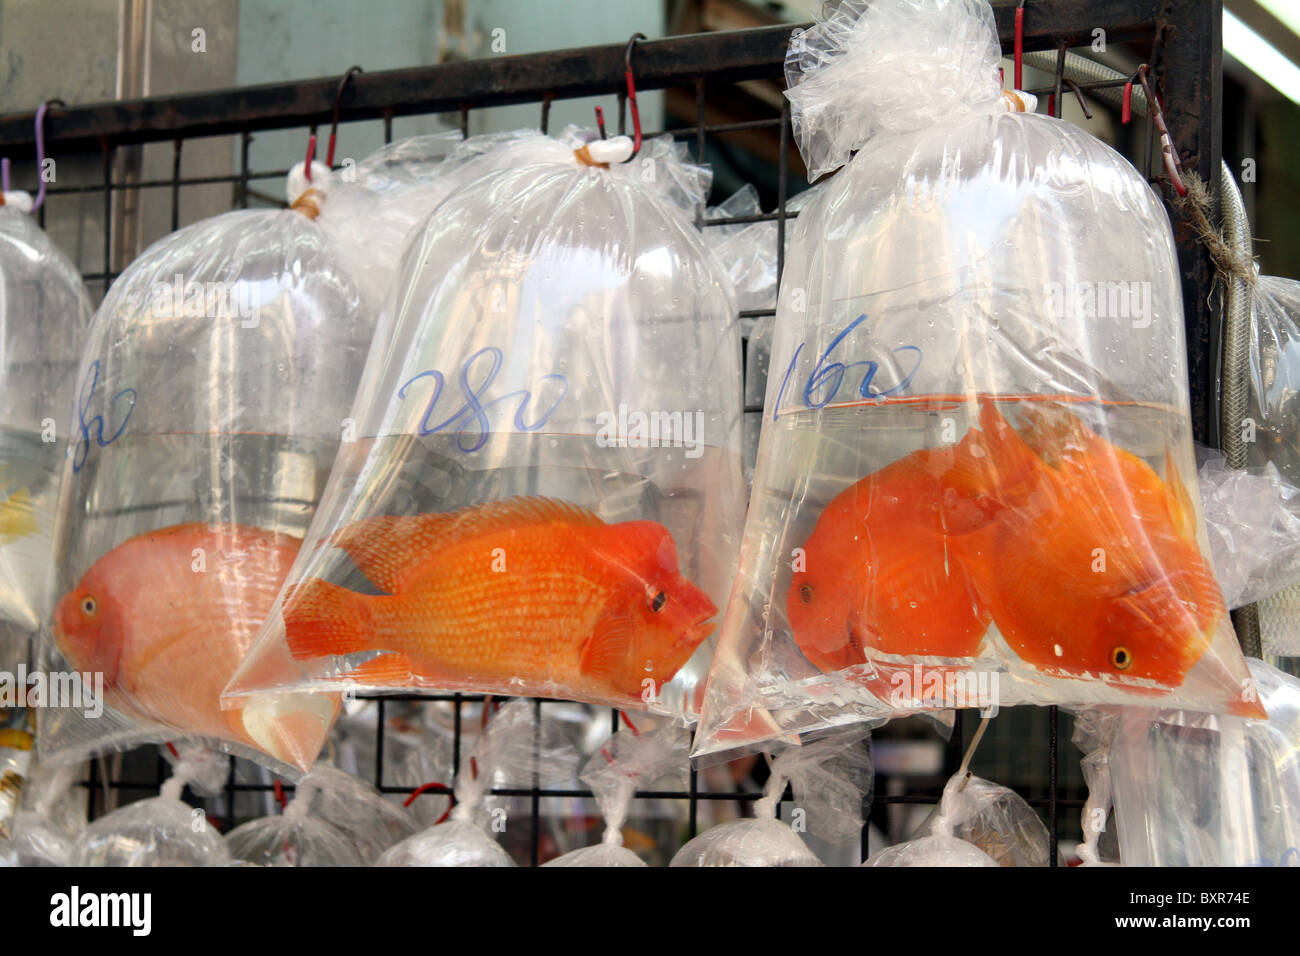 Acquario pet shop vende goldfish in sacchetti di plastica nel mercato del pesce in area su Tung Choi Street a Kowloon, Hong Kong, Cina Foto Stock